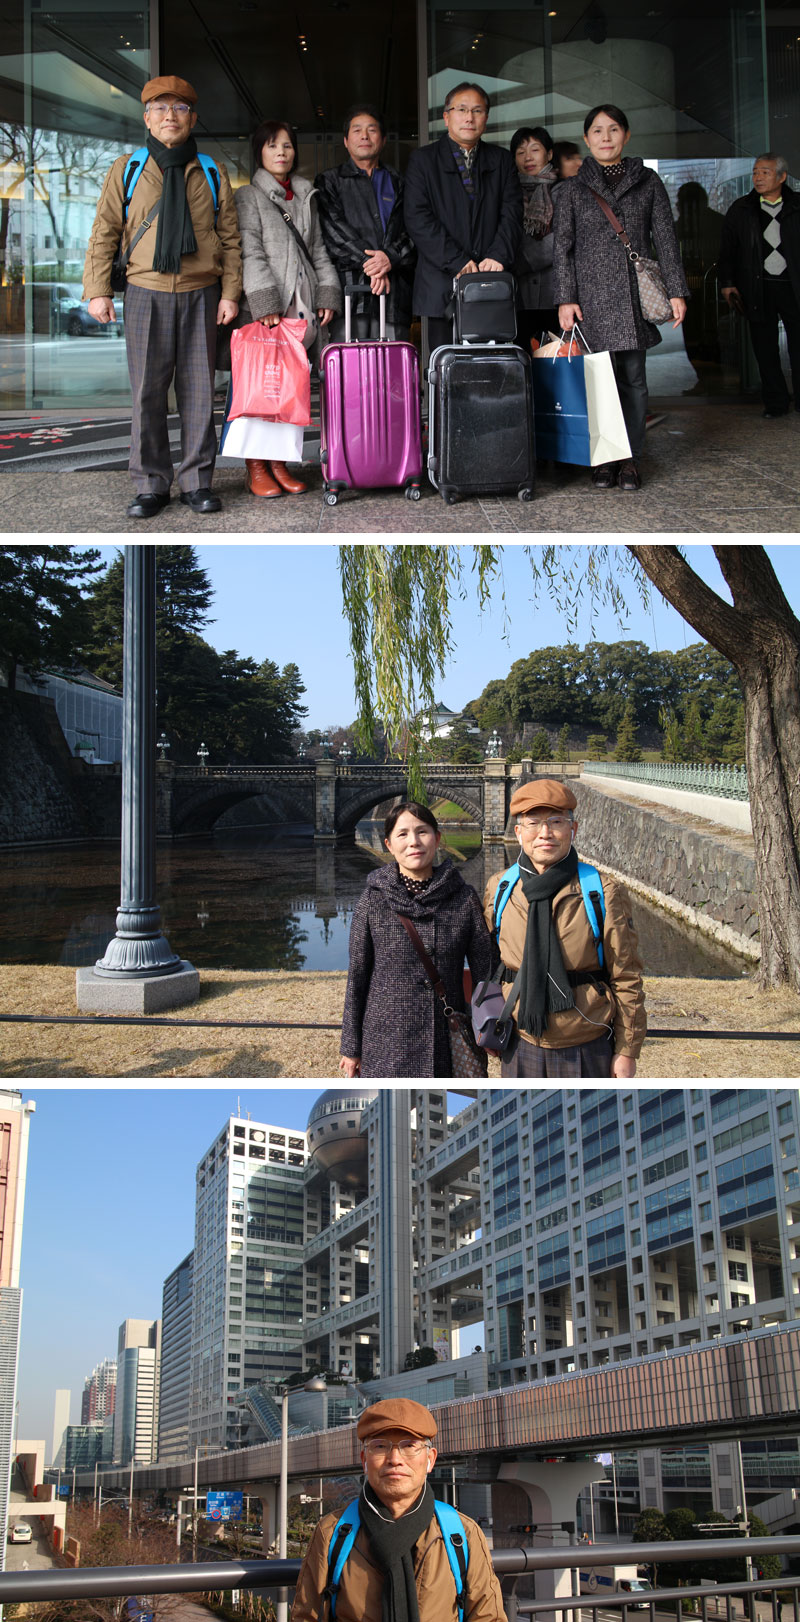 上段：結婚式が行われた「ヒルトン東京」の前で。中段：皇居二重橋の前で。下段：お台場「フジテレビ」の前で。